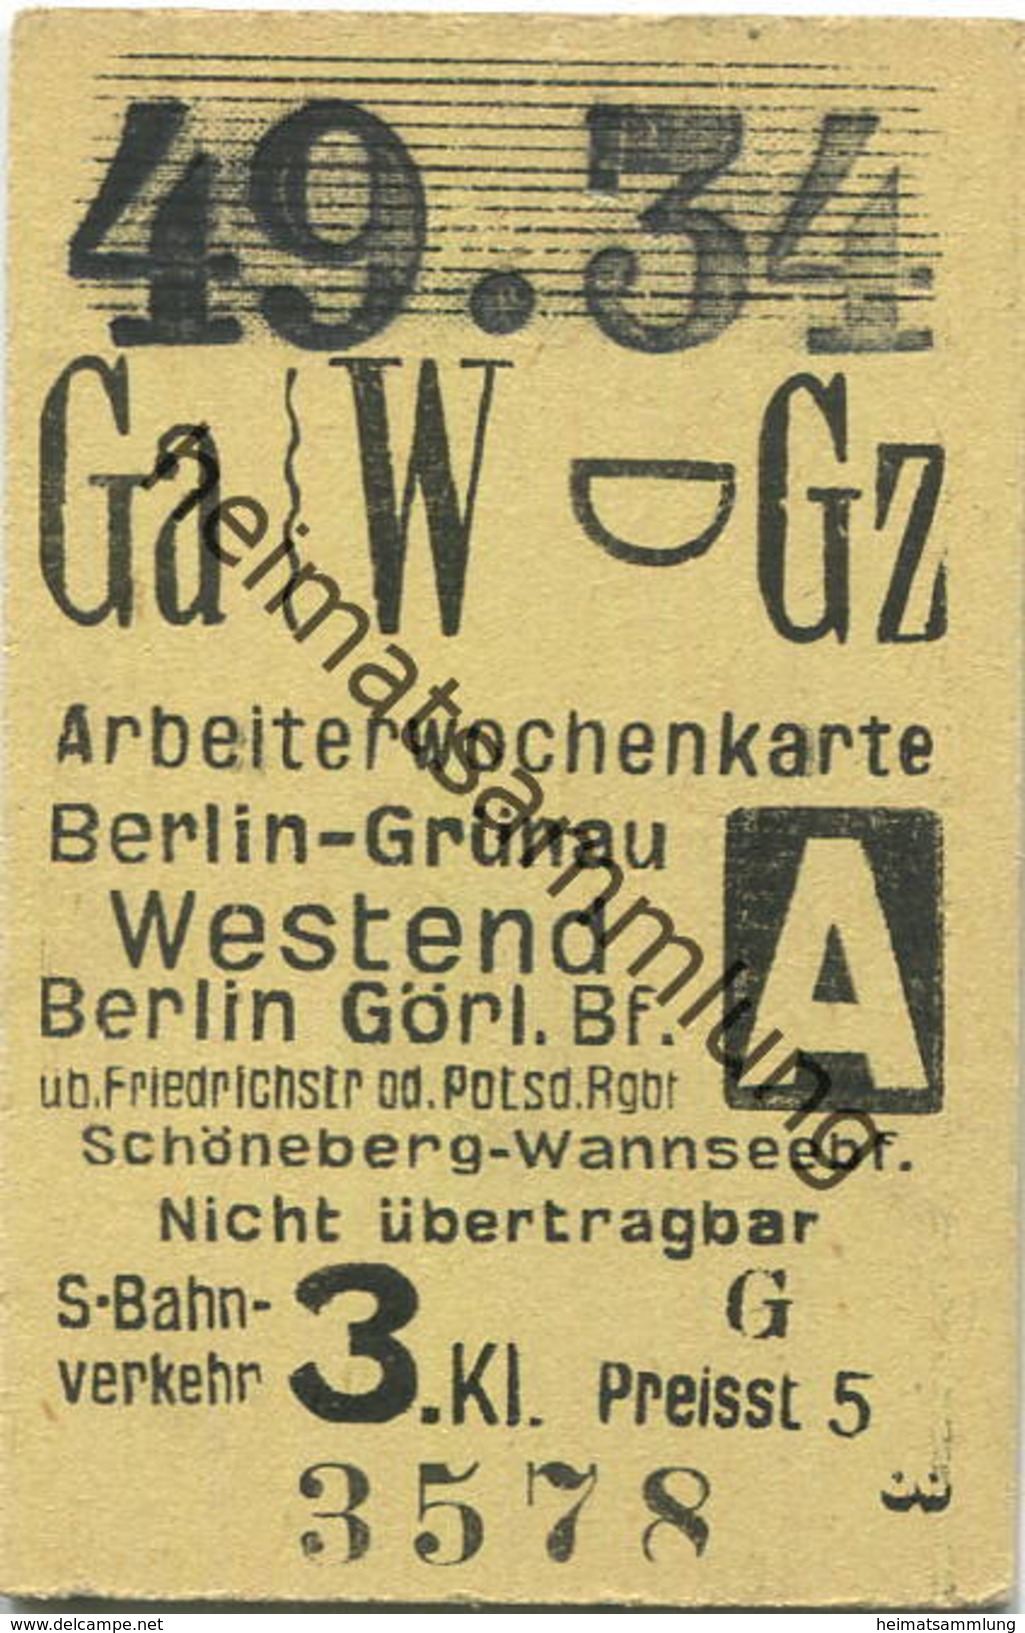 Deutschland - Arbeiterwochenkarte - Berlin-Grünau - Westend Berlin Görlitzer Bf. 3.Kl. - Fahrkarte 1934 - Europa